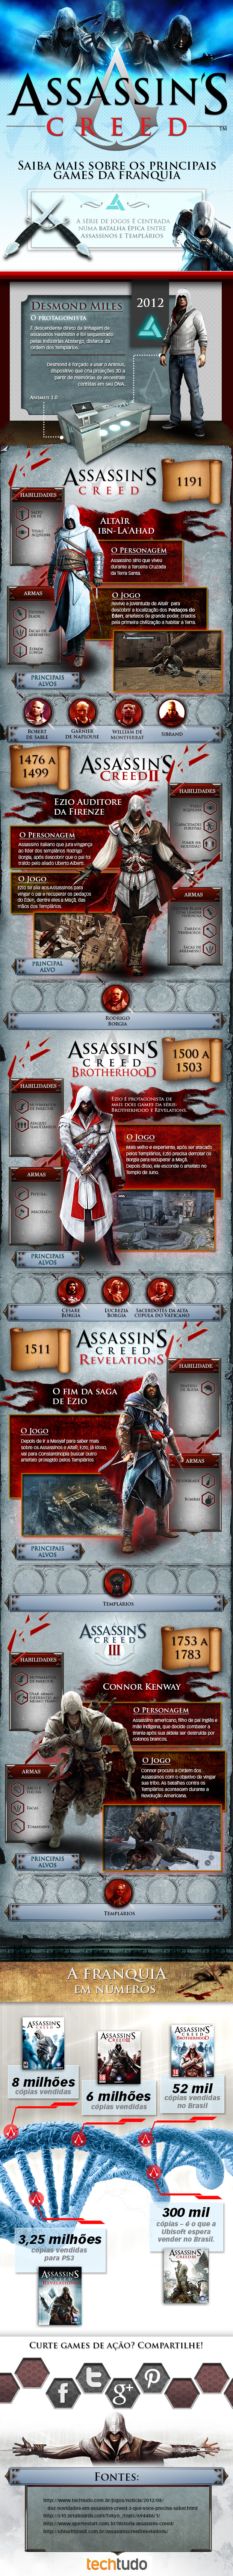 Infográfico mostra a trajetória da franquia Assassin's Creed (Foto: TechTudo)